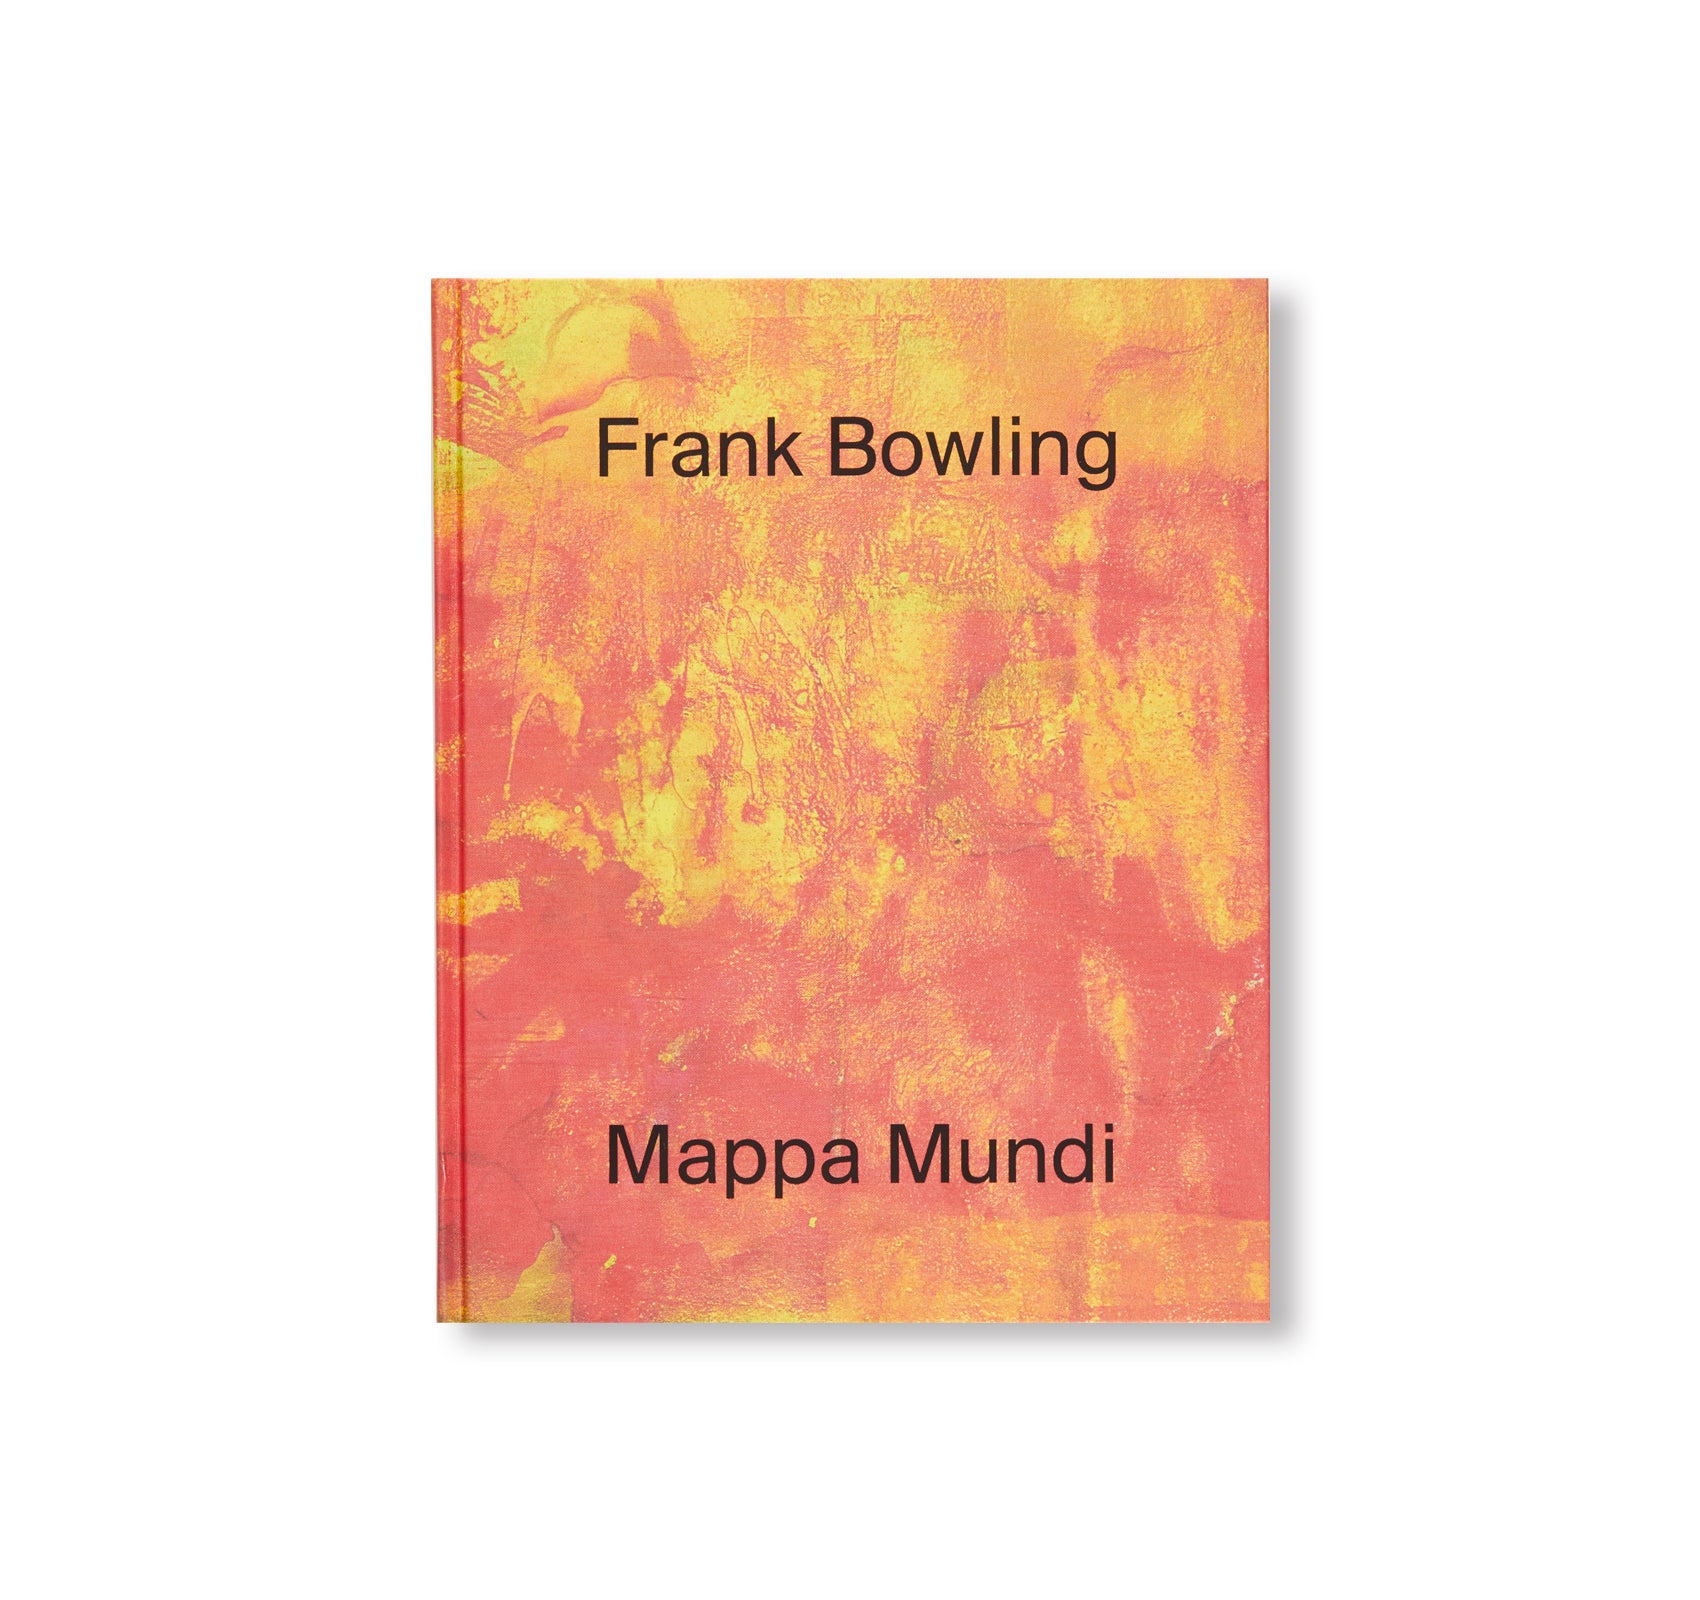 MAPPA MUNDI by Frank Bowling